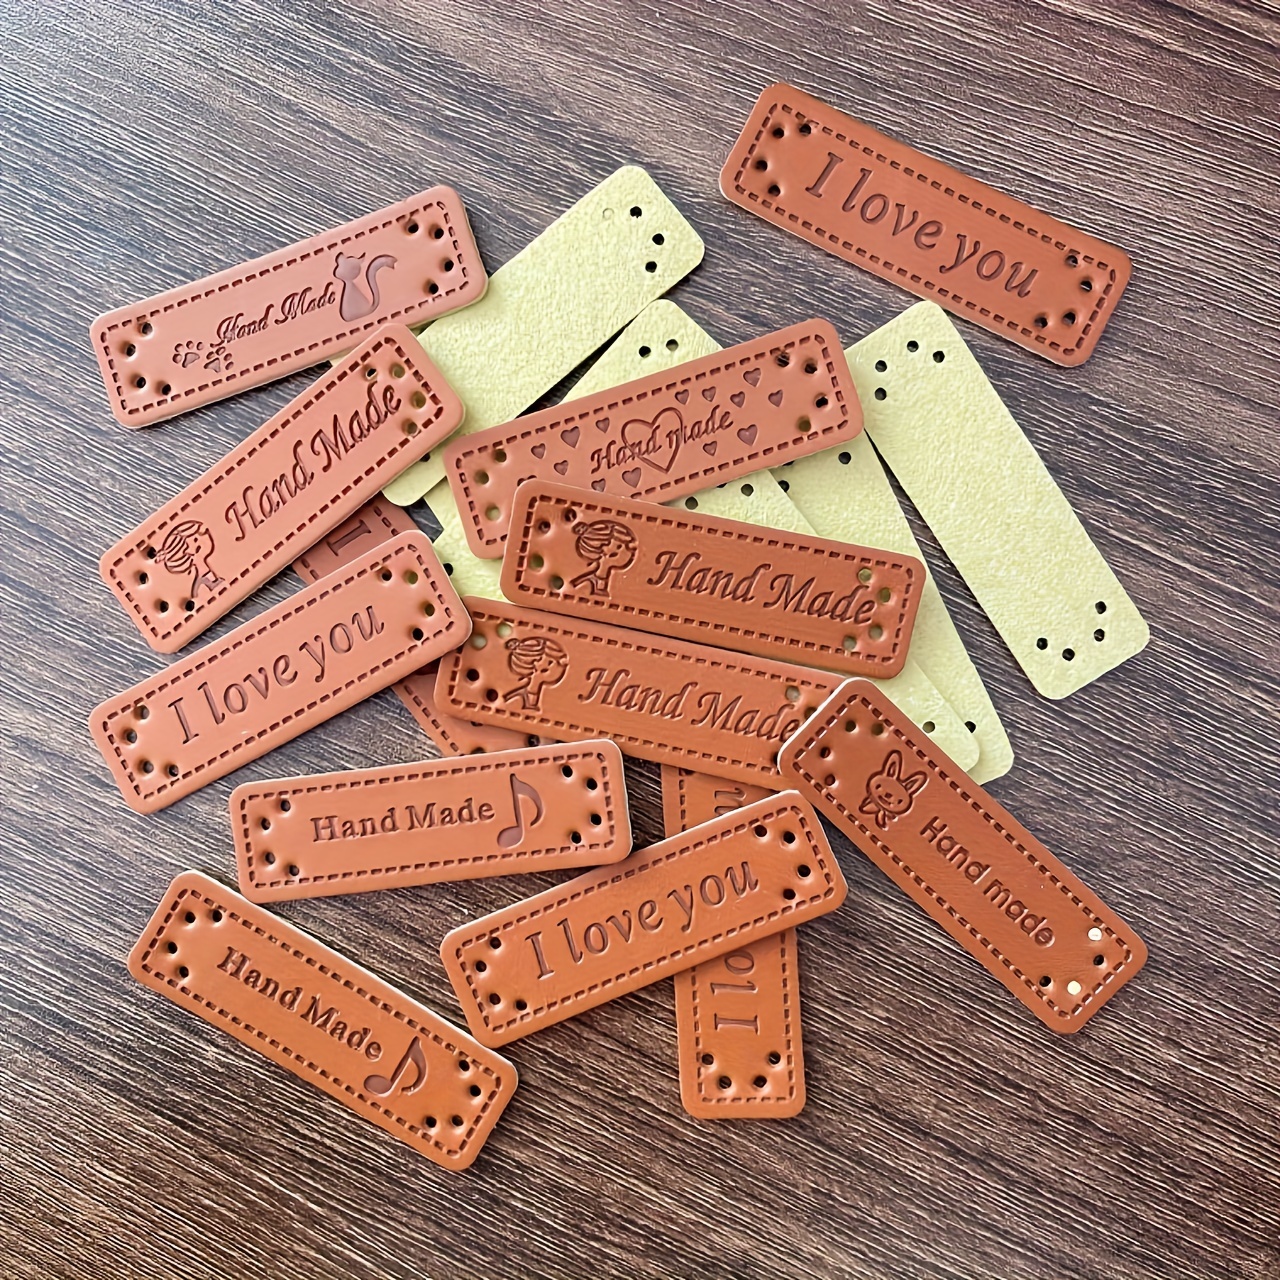 Etichette artigianali in legno HANDMADE CONFEZIONE DA 10 PEZZI ASSORTITE